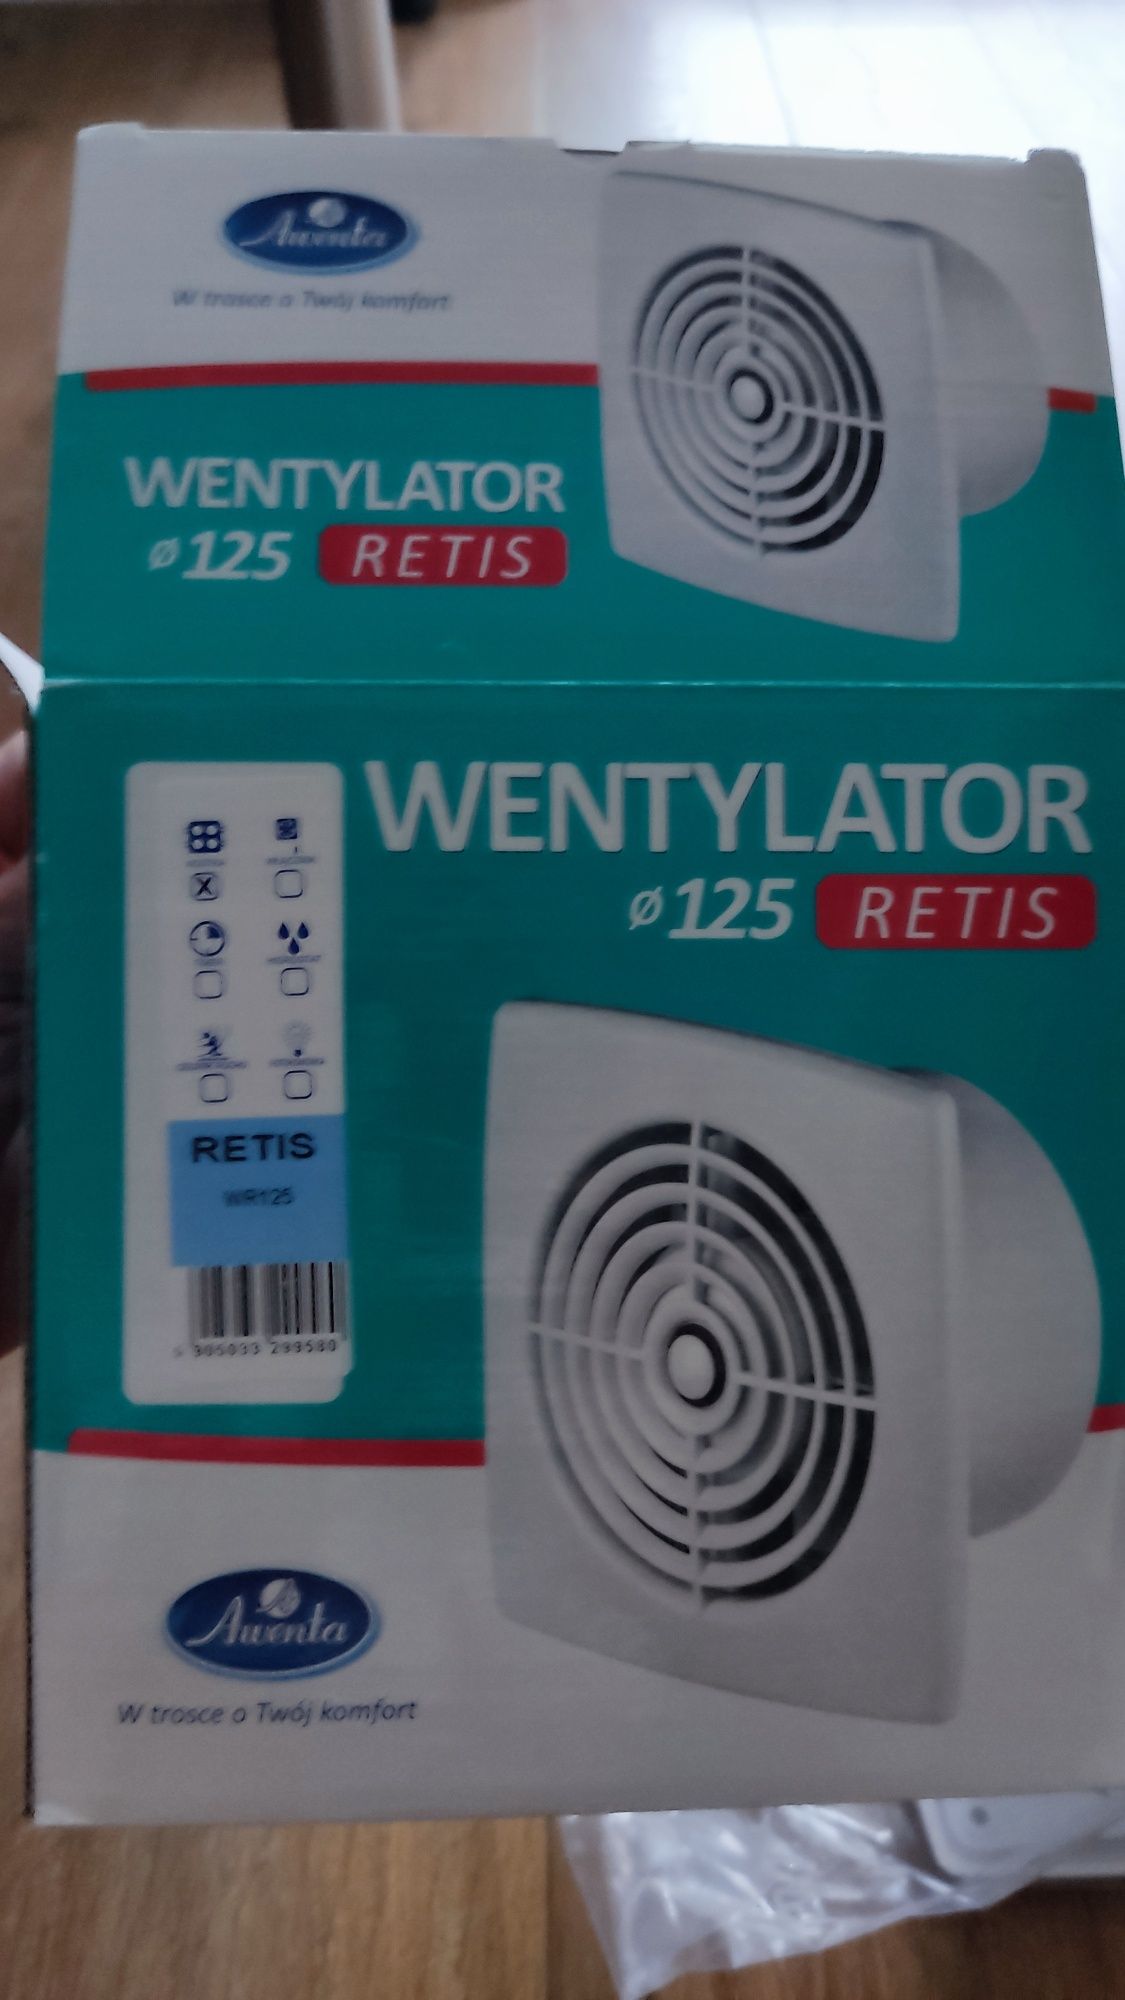 Wentylator wyciąg Awenta RETIS WR125 - kostka